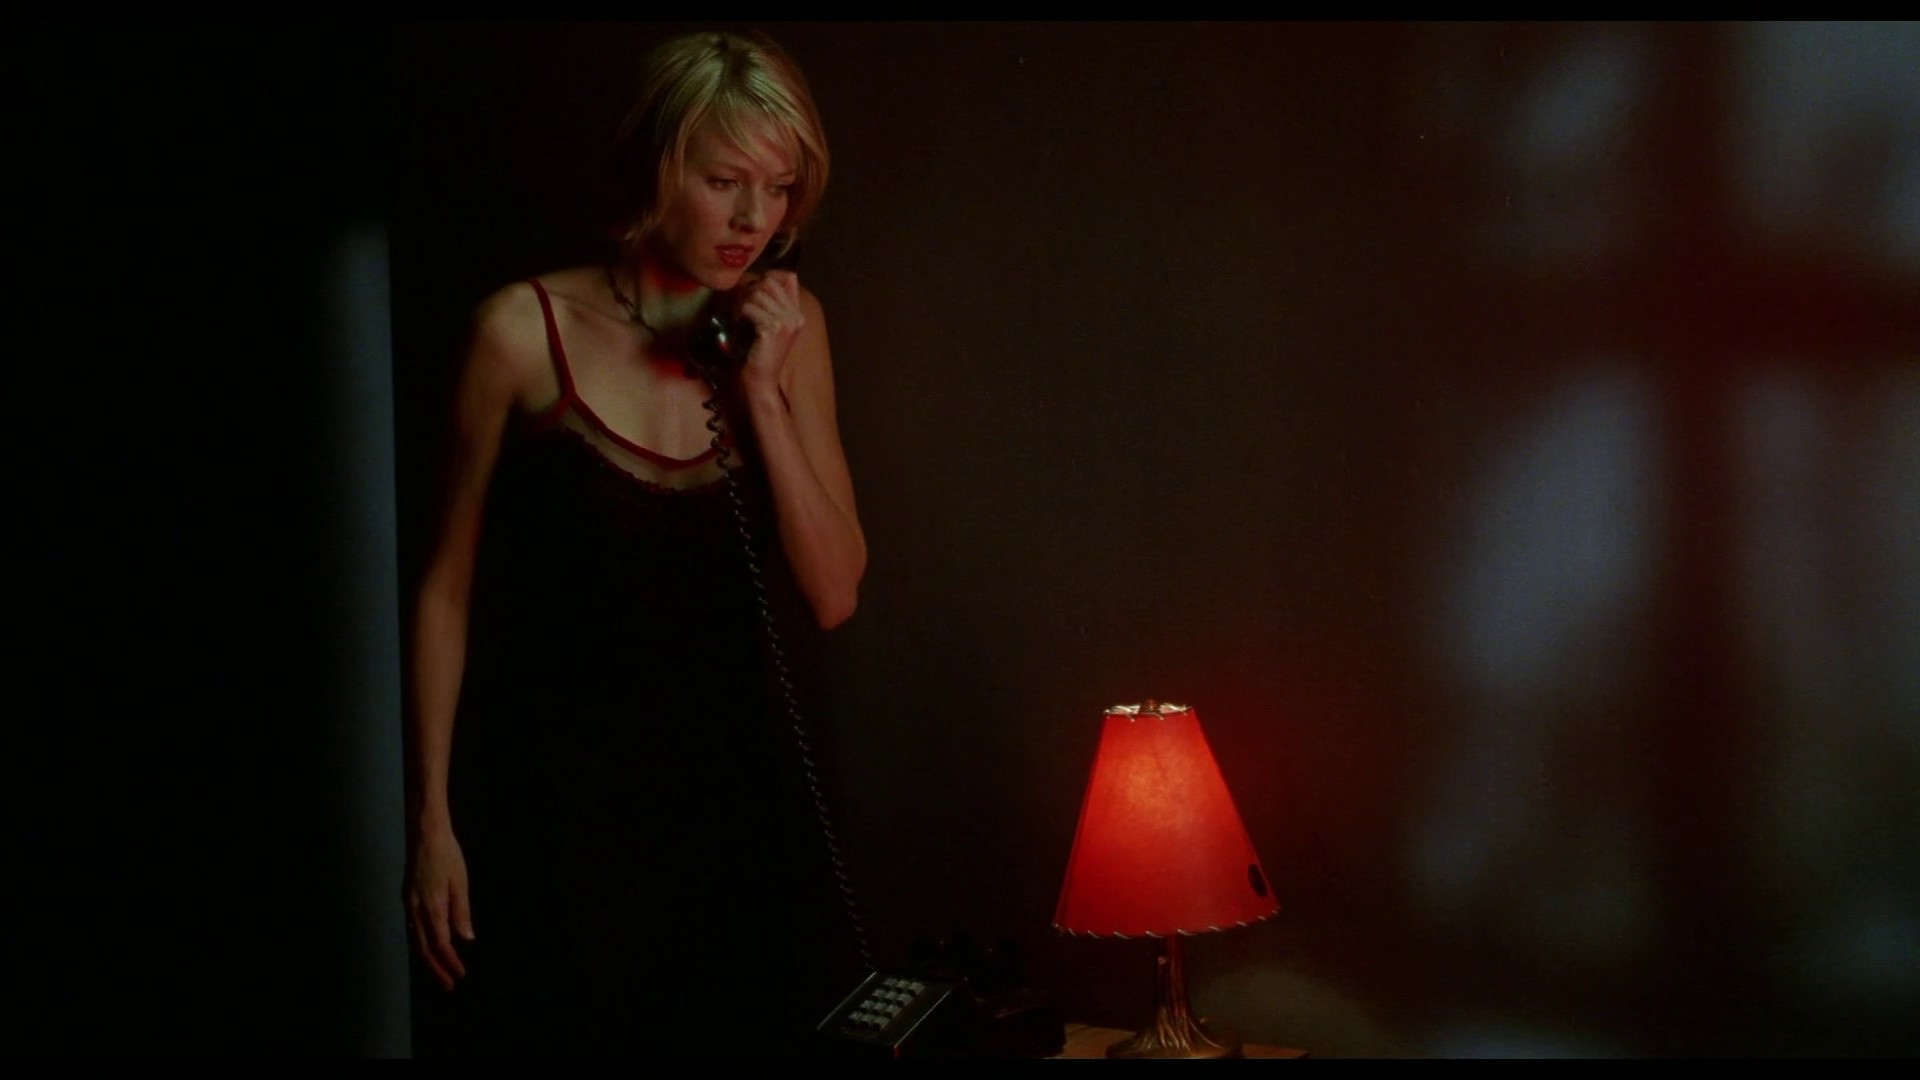 Naomi Watts - Mulholland Drive - David Lynch - Téléphone / Phone